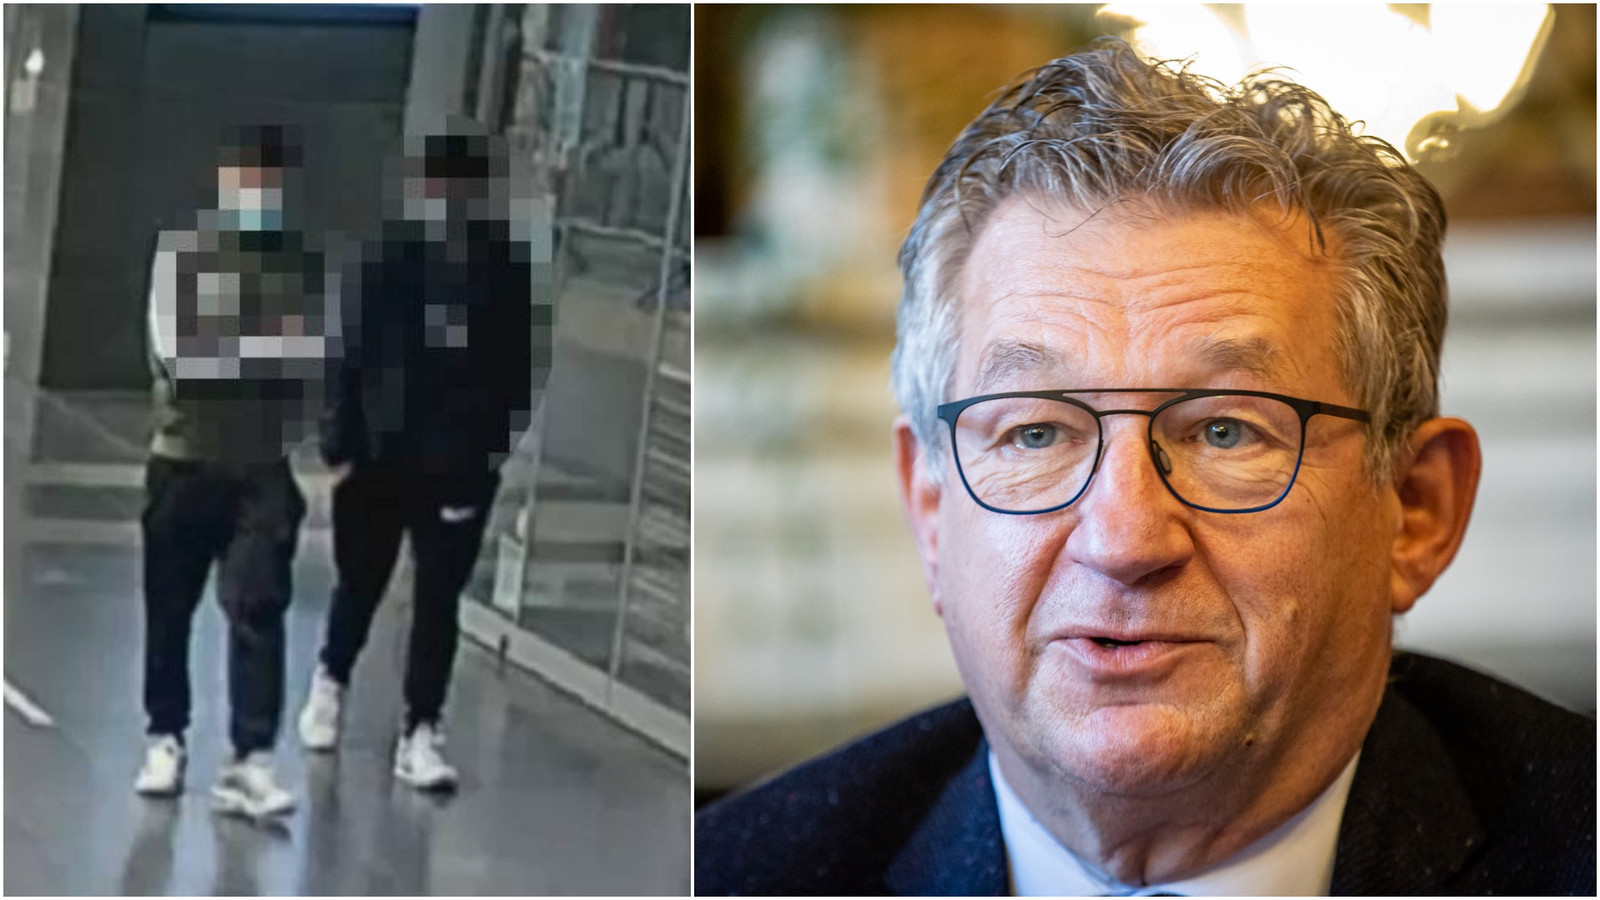 Volgens Dirk De fauw zijn de verdachten van de aanranding (links) goed gekend bij de politie van Brugge. Alleen werden zij nooit betrokken bij het onderzoek